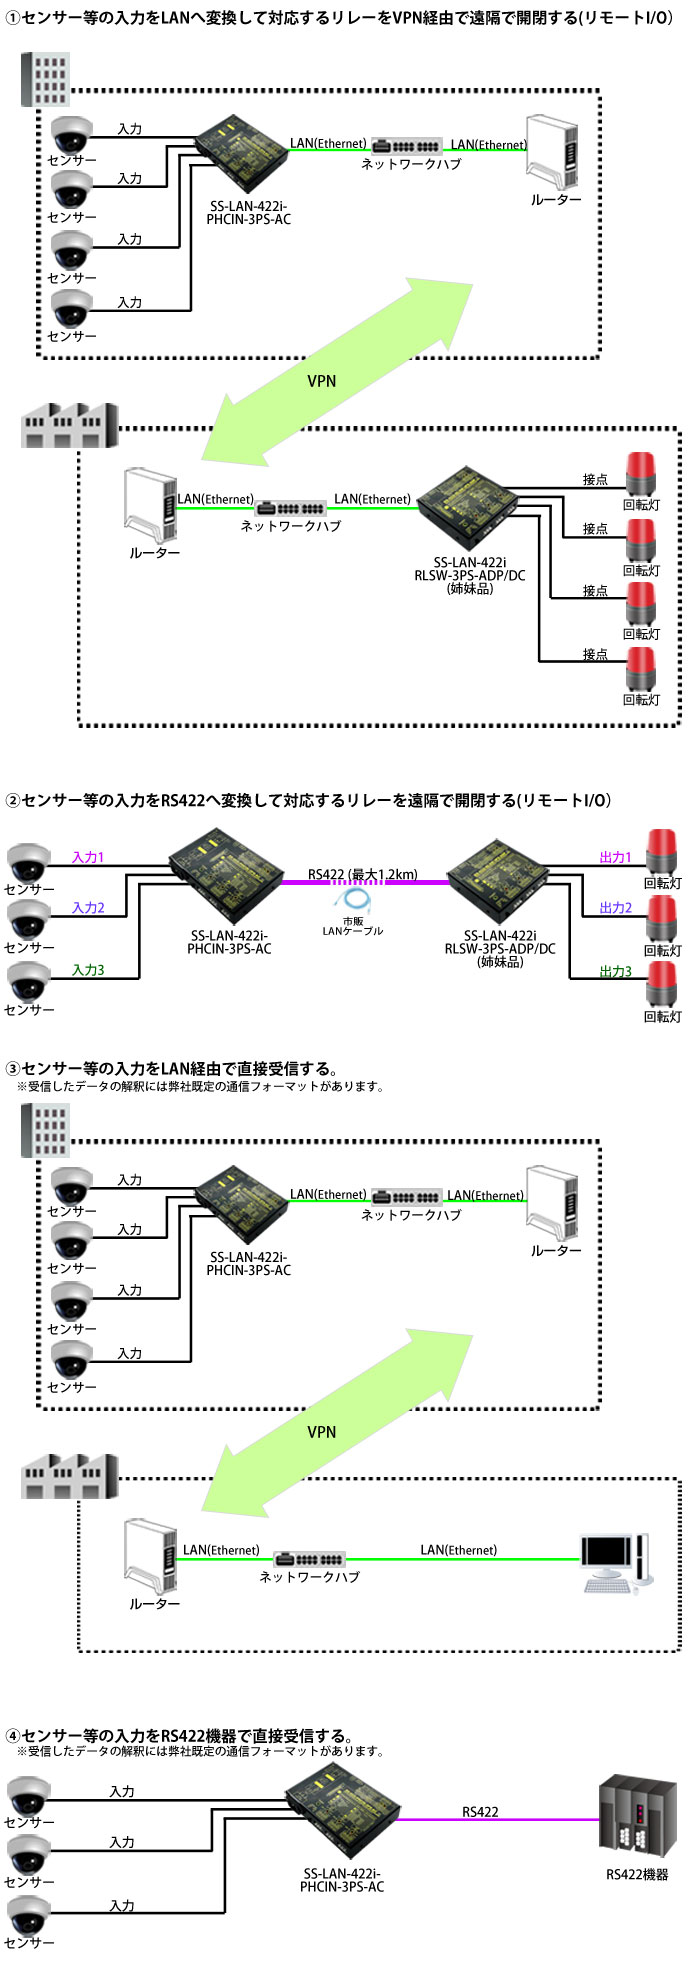 SS-LAN-422i-PHCIN-3PS-AC接続例